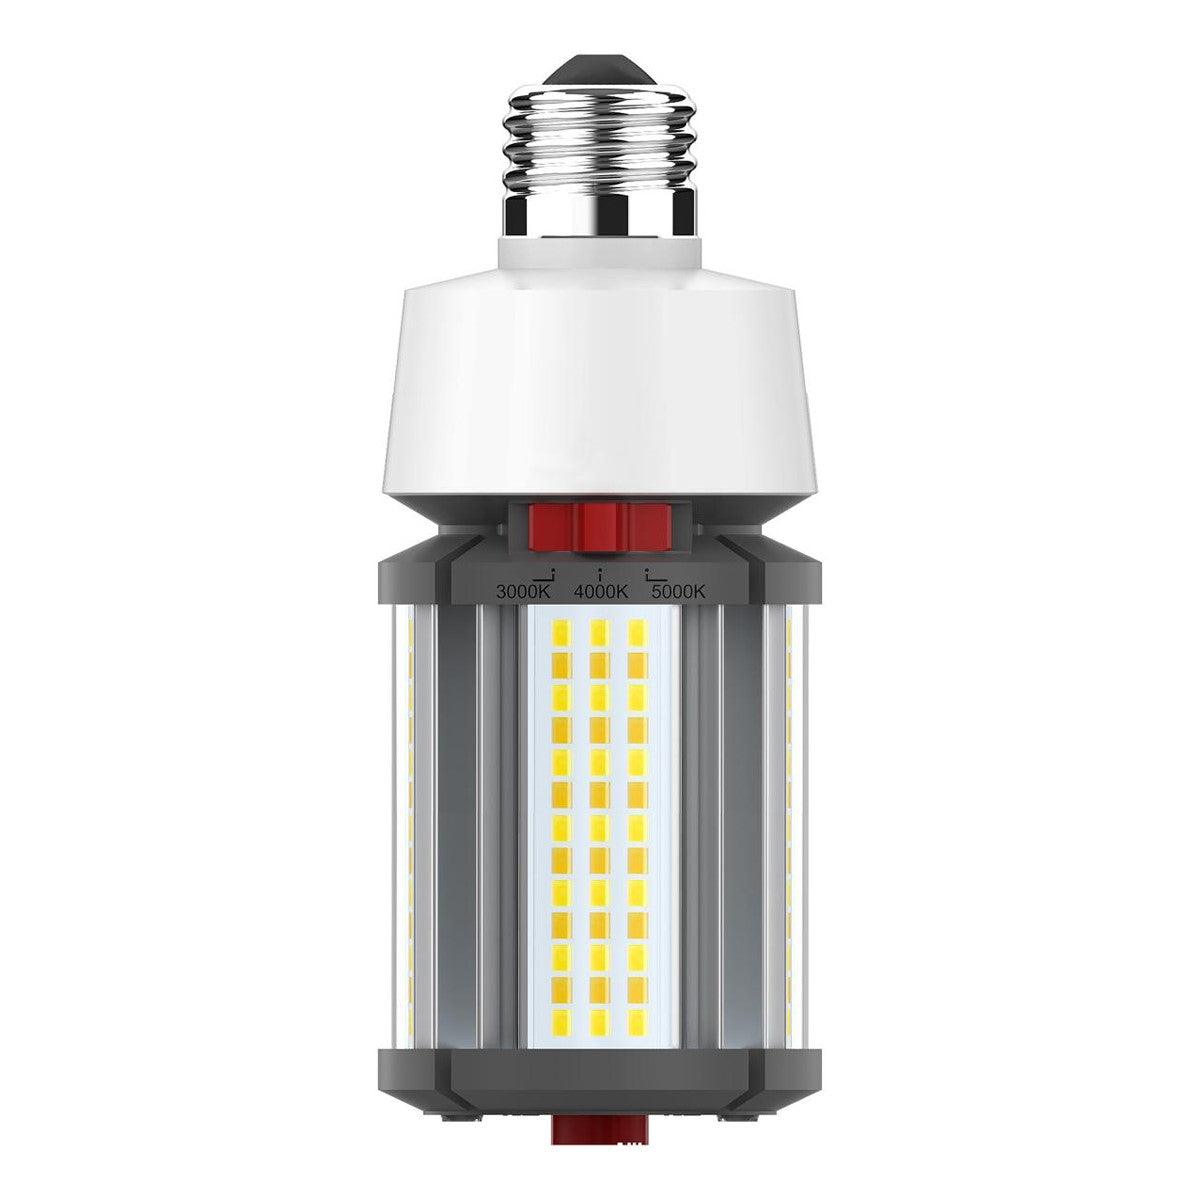 Hi-Pro Retrofit LED Corn Bulb, 18W, 2520 Lumens, Selectable CCT, 30K/40K/50K, E26 Base, 120-277V - Bees Lighting